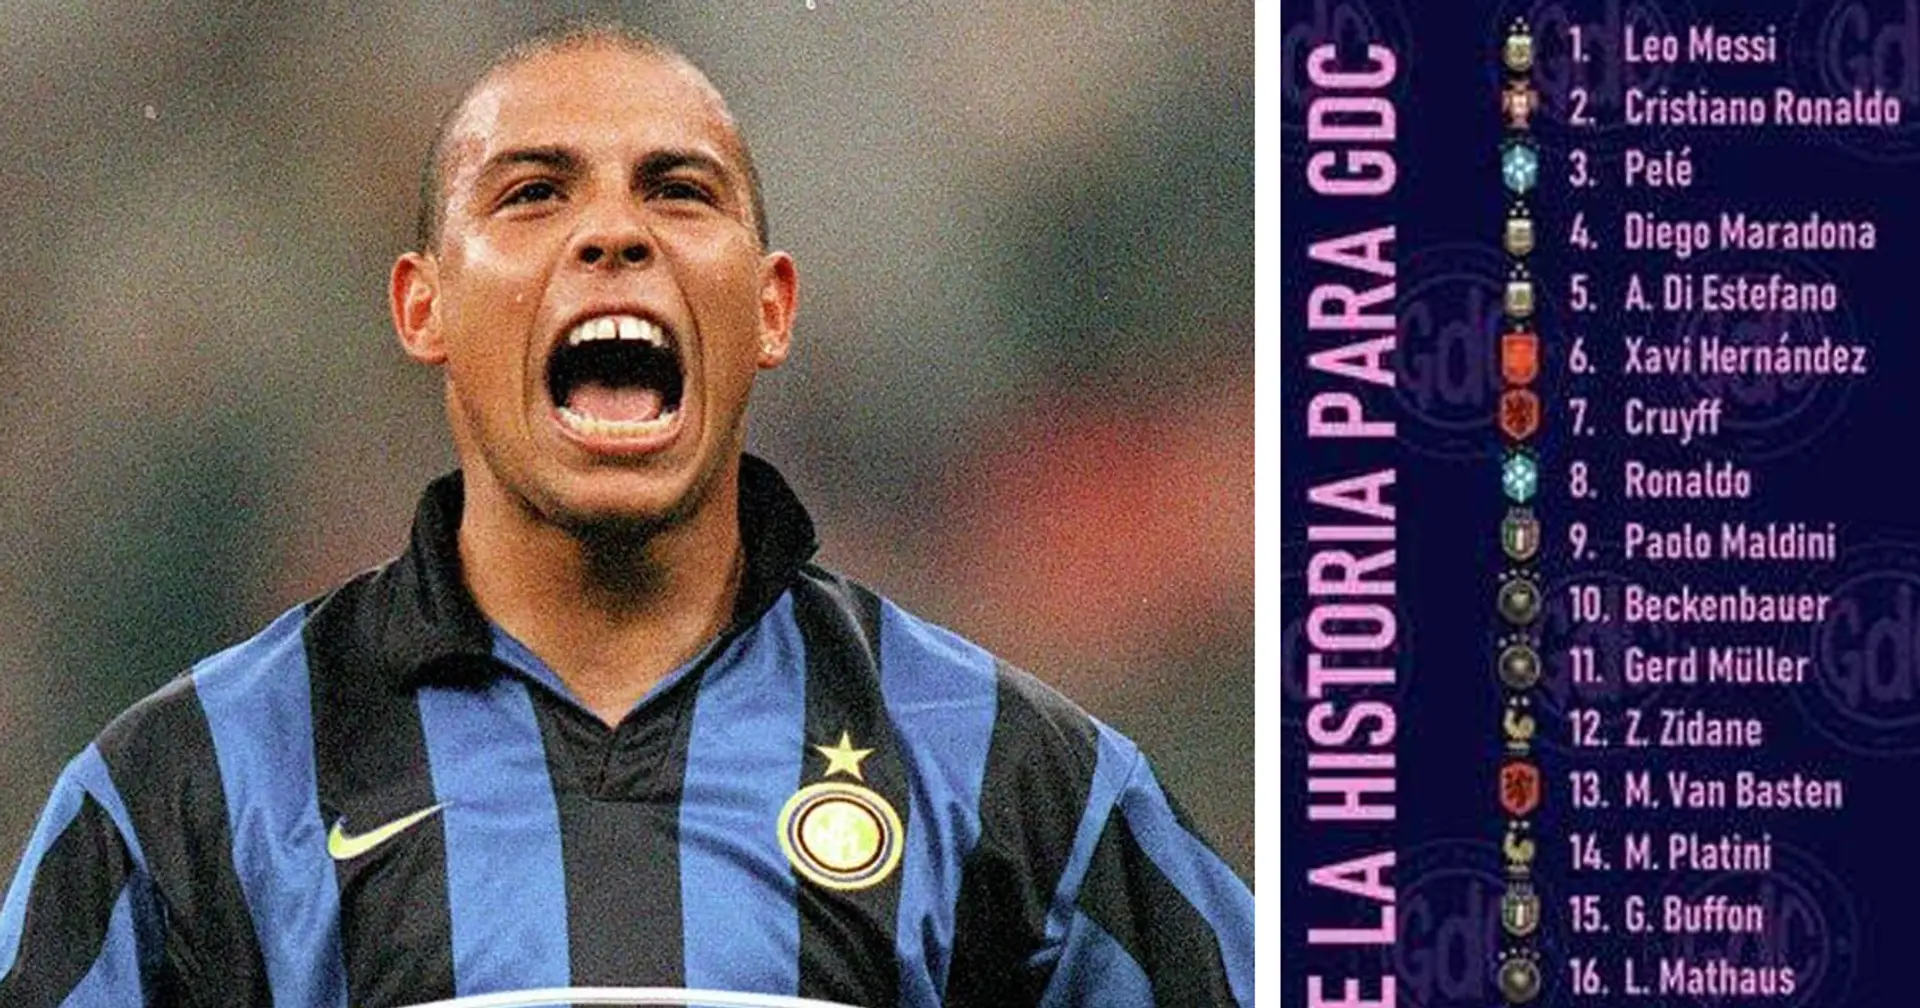 La Top 100 'Migliori calciatori' della storia: l'Inter può vantare ben 9 giocatori